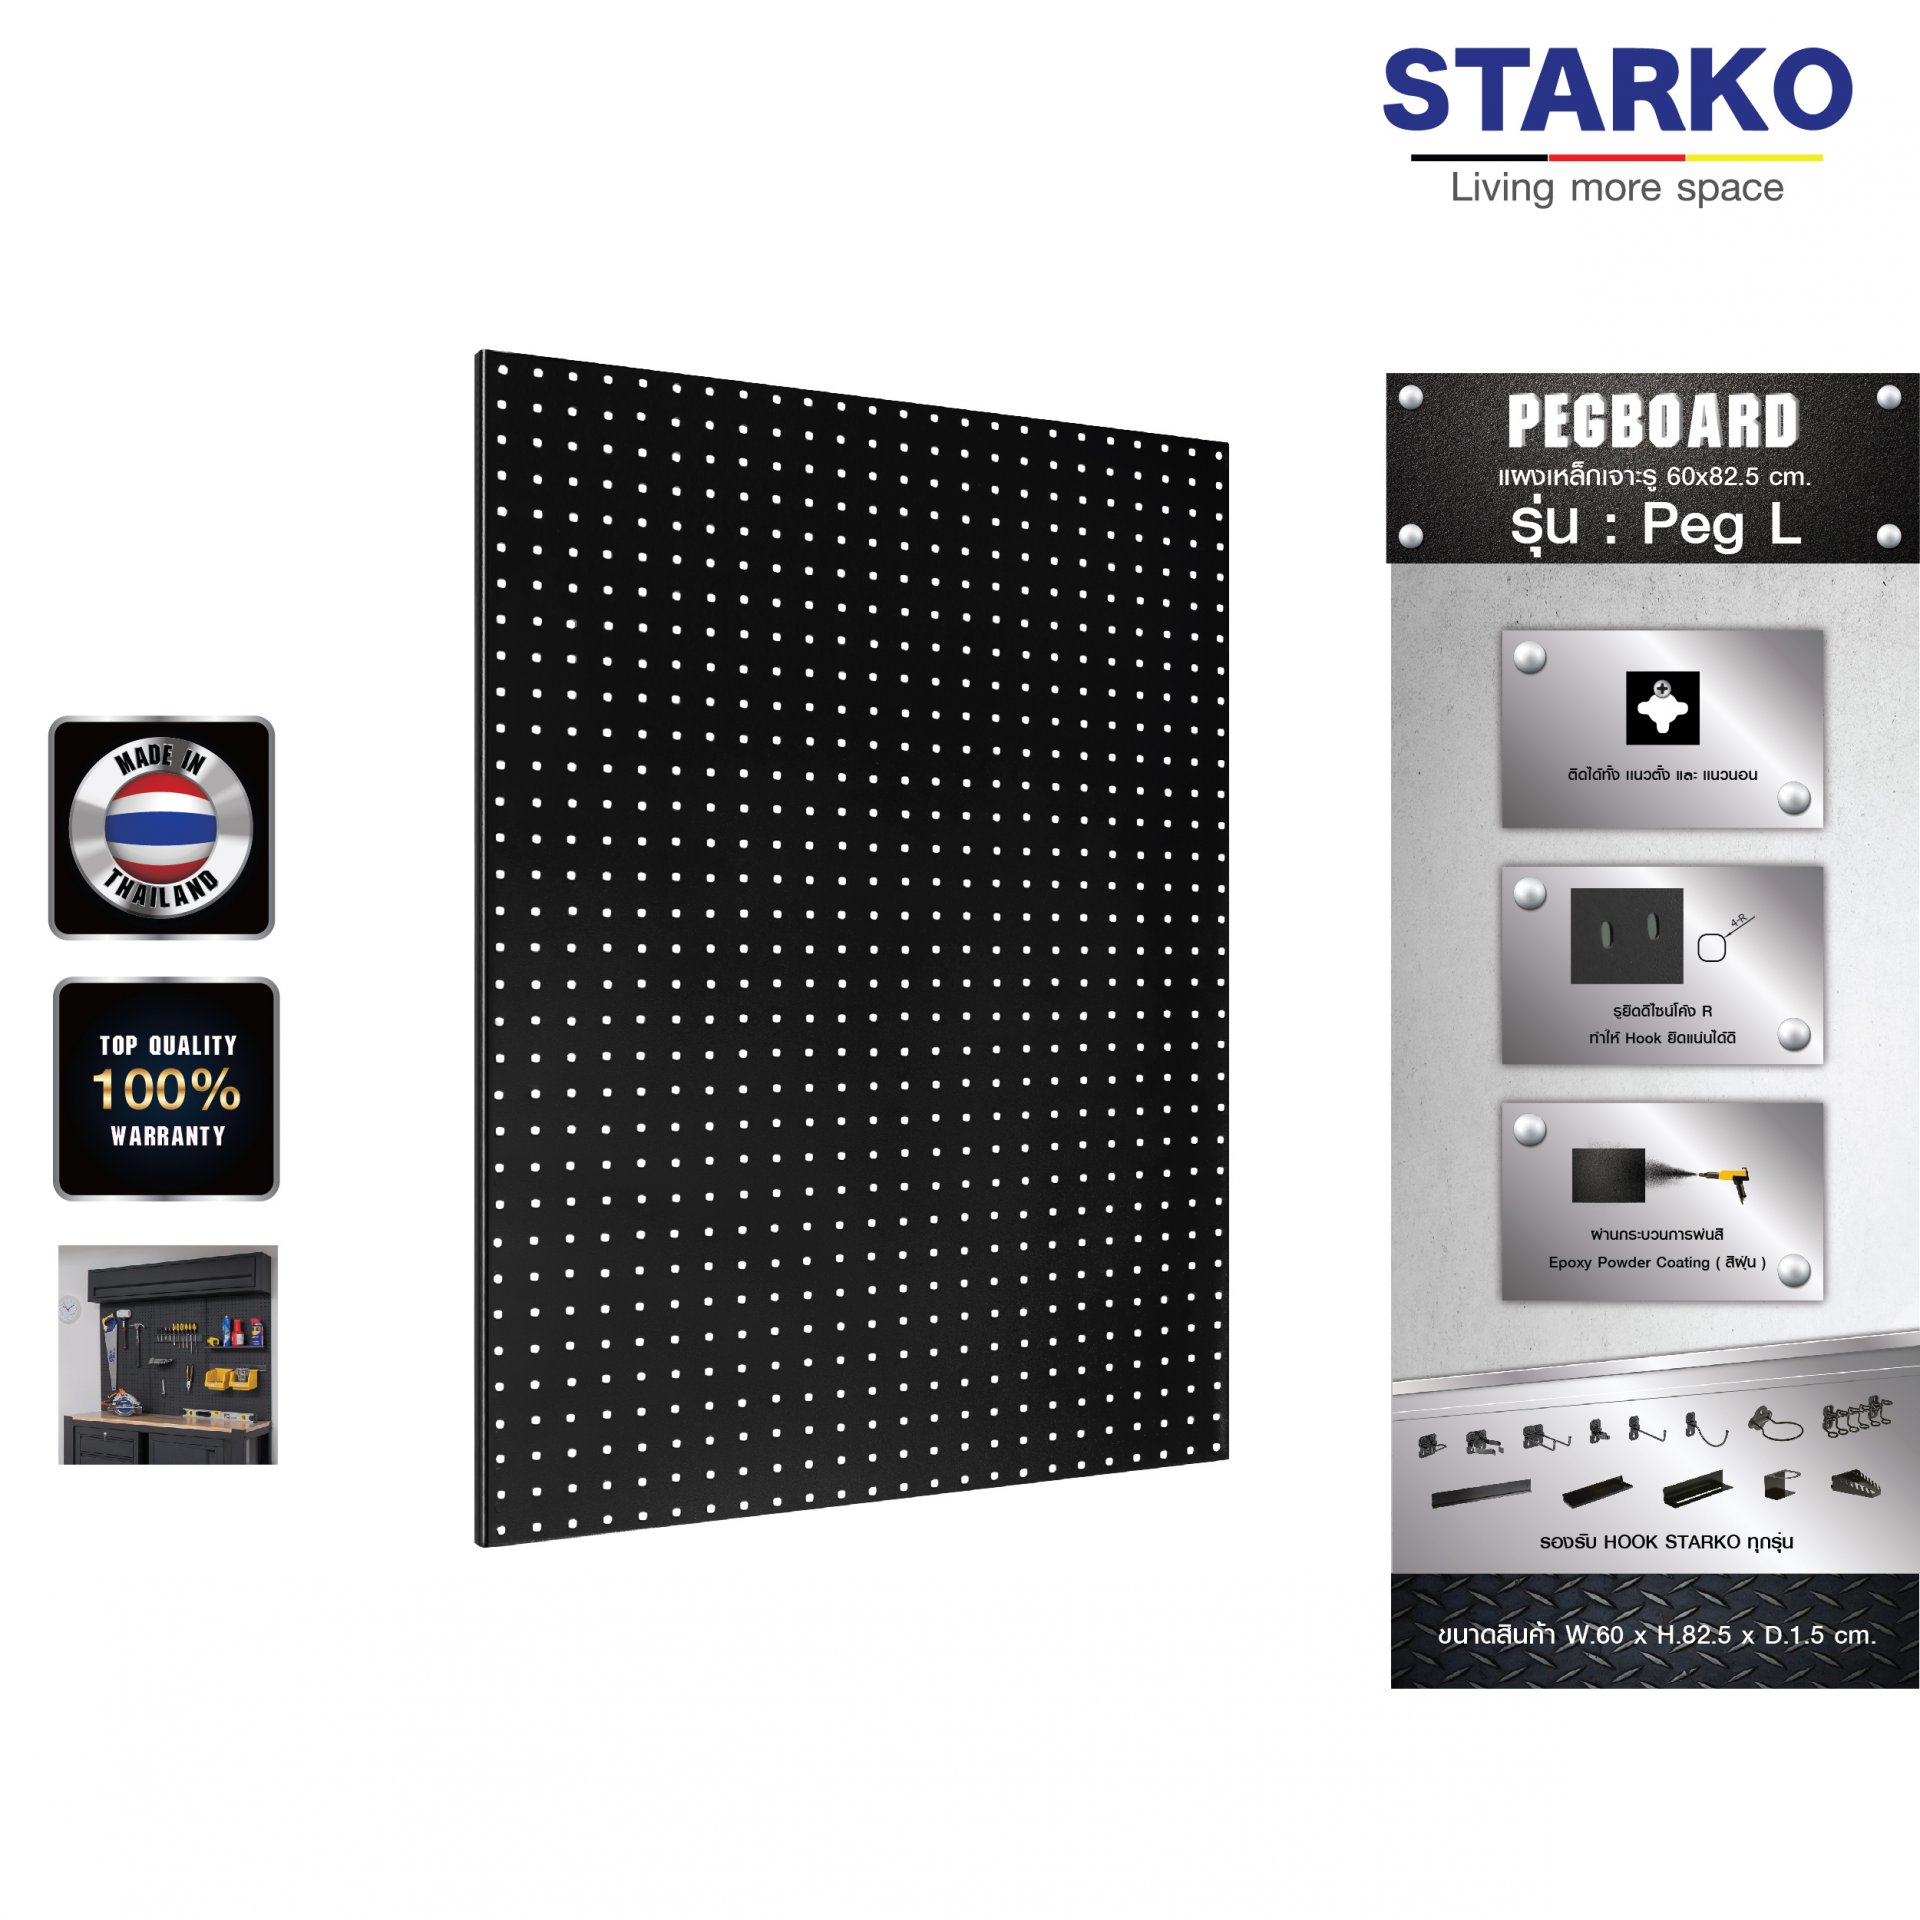 STARKO PEGBOARD รุ่น Peg L (สีดำ) แผงเหล็ก แผงแขวน เครื่องมือช่าง จัดเรียงอุปกรณ์ช่าง จัดระเบียบอุปกรณ์ แข็งแรง สินค้าประเทศไทย